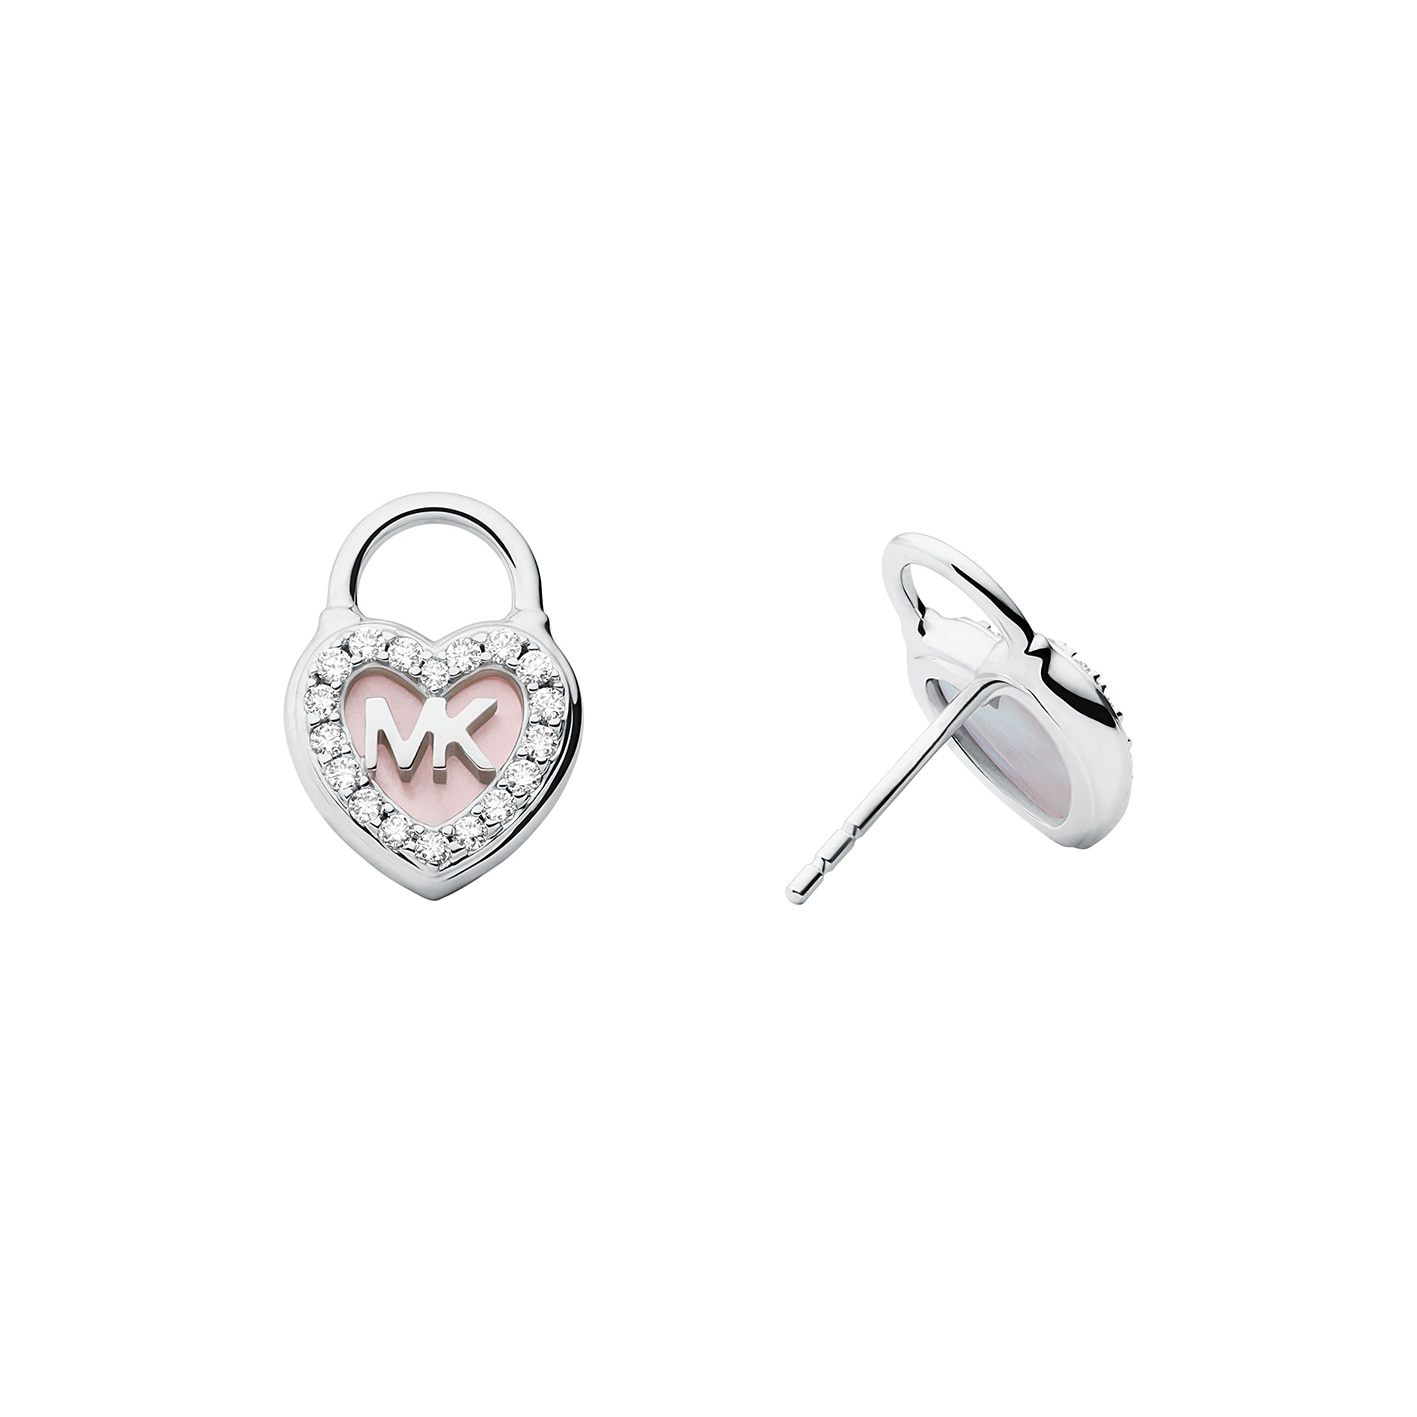 Premium earrings silver/pink